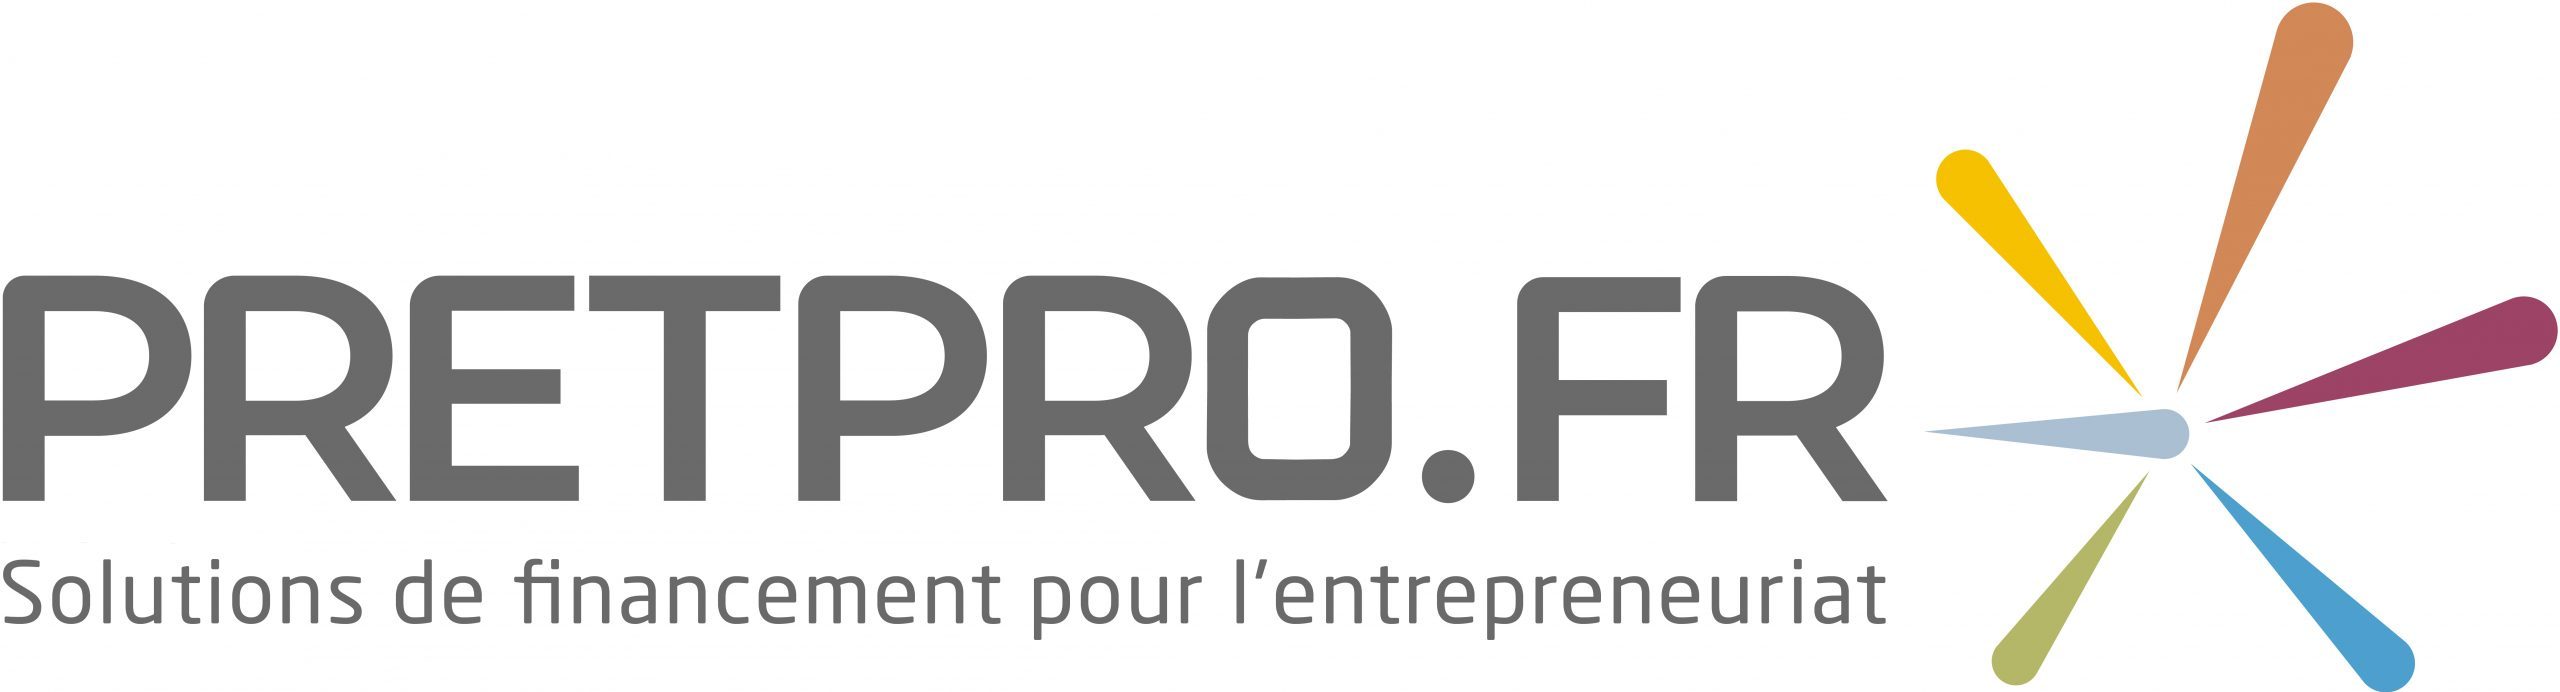 Nicolas ODDO – Pretpro.fr